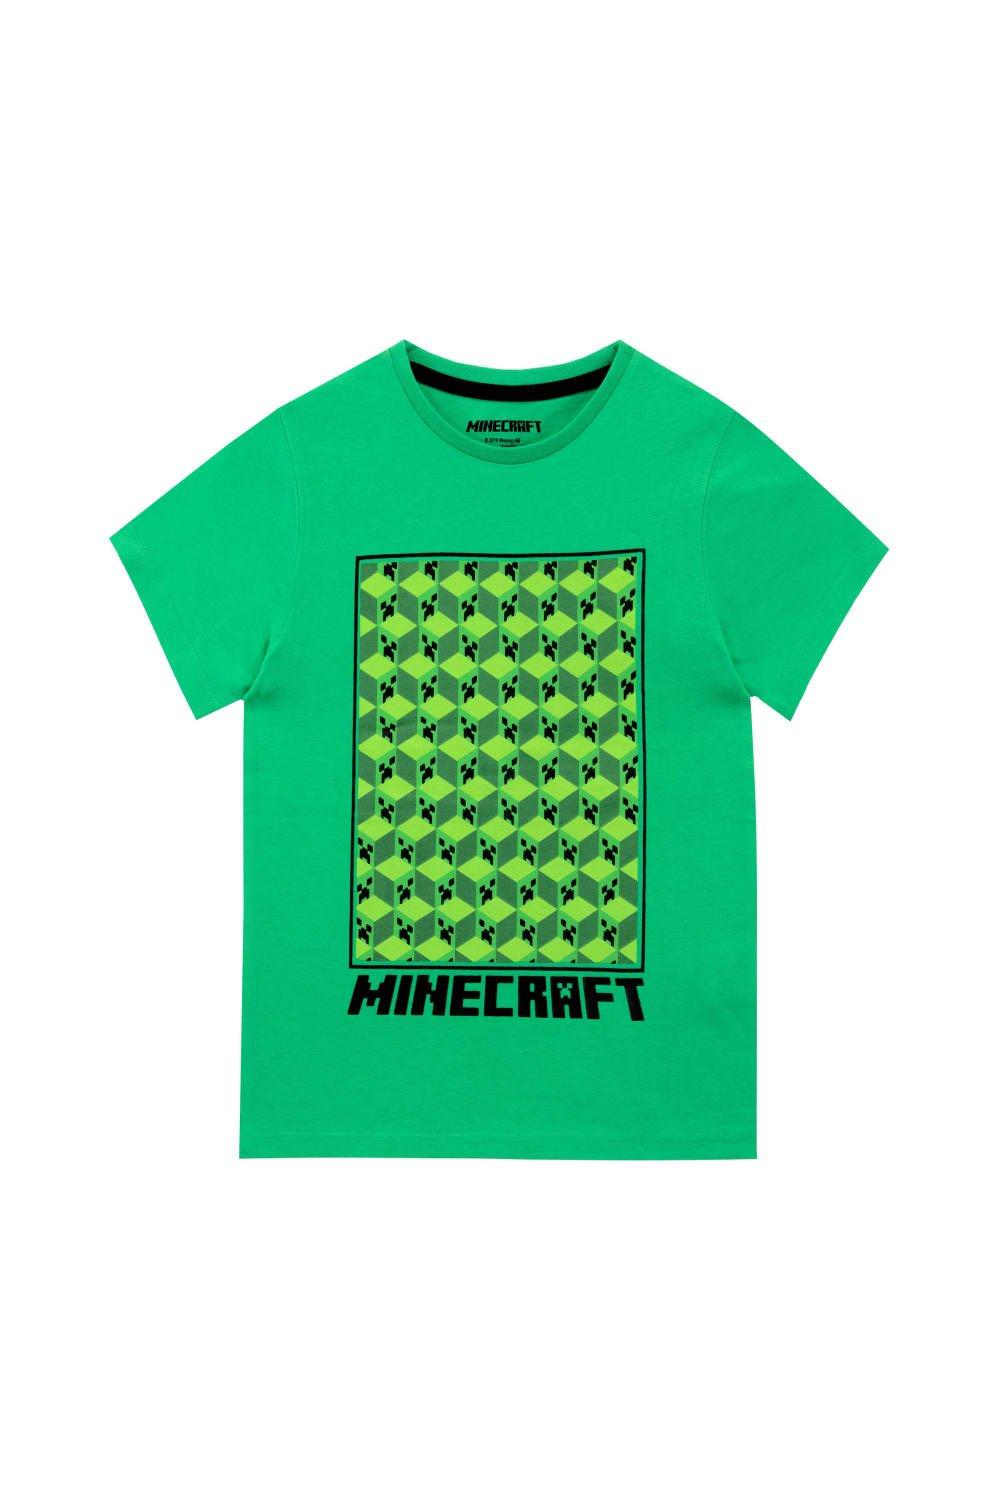 картонная маска крипера из игры майнкрафт minecraft Футболка с рисунком Creeper Minecraft, зеленый